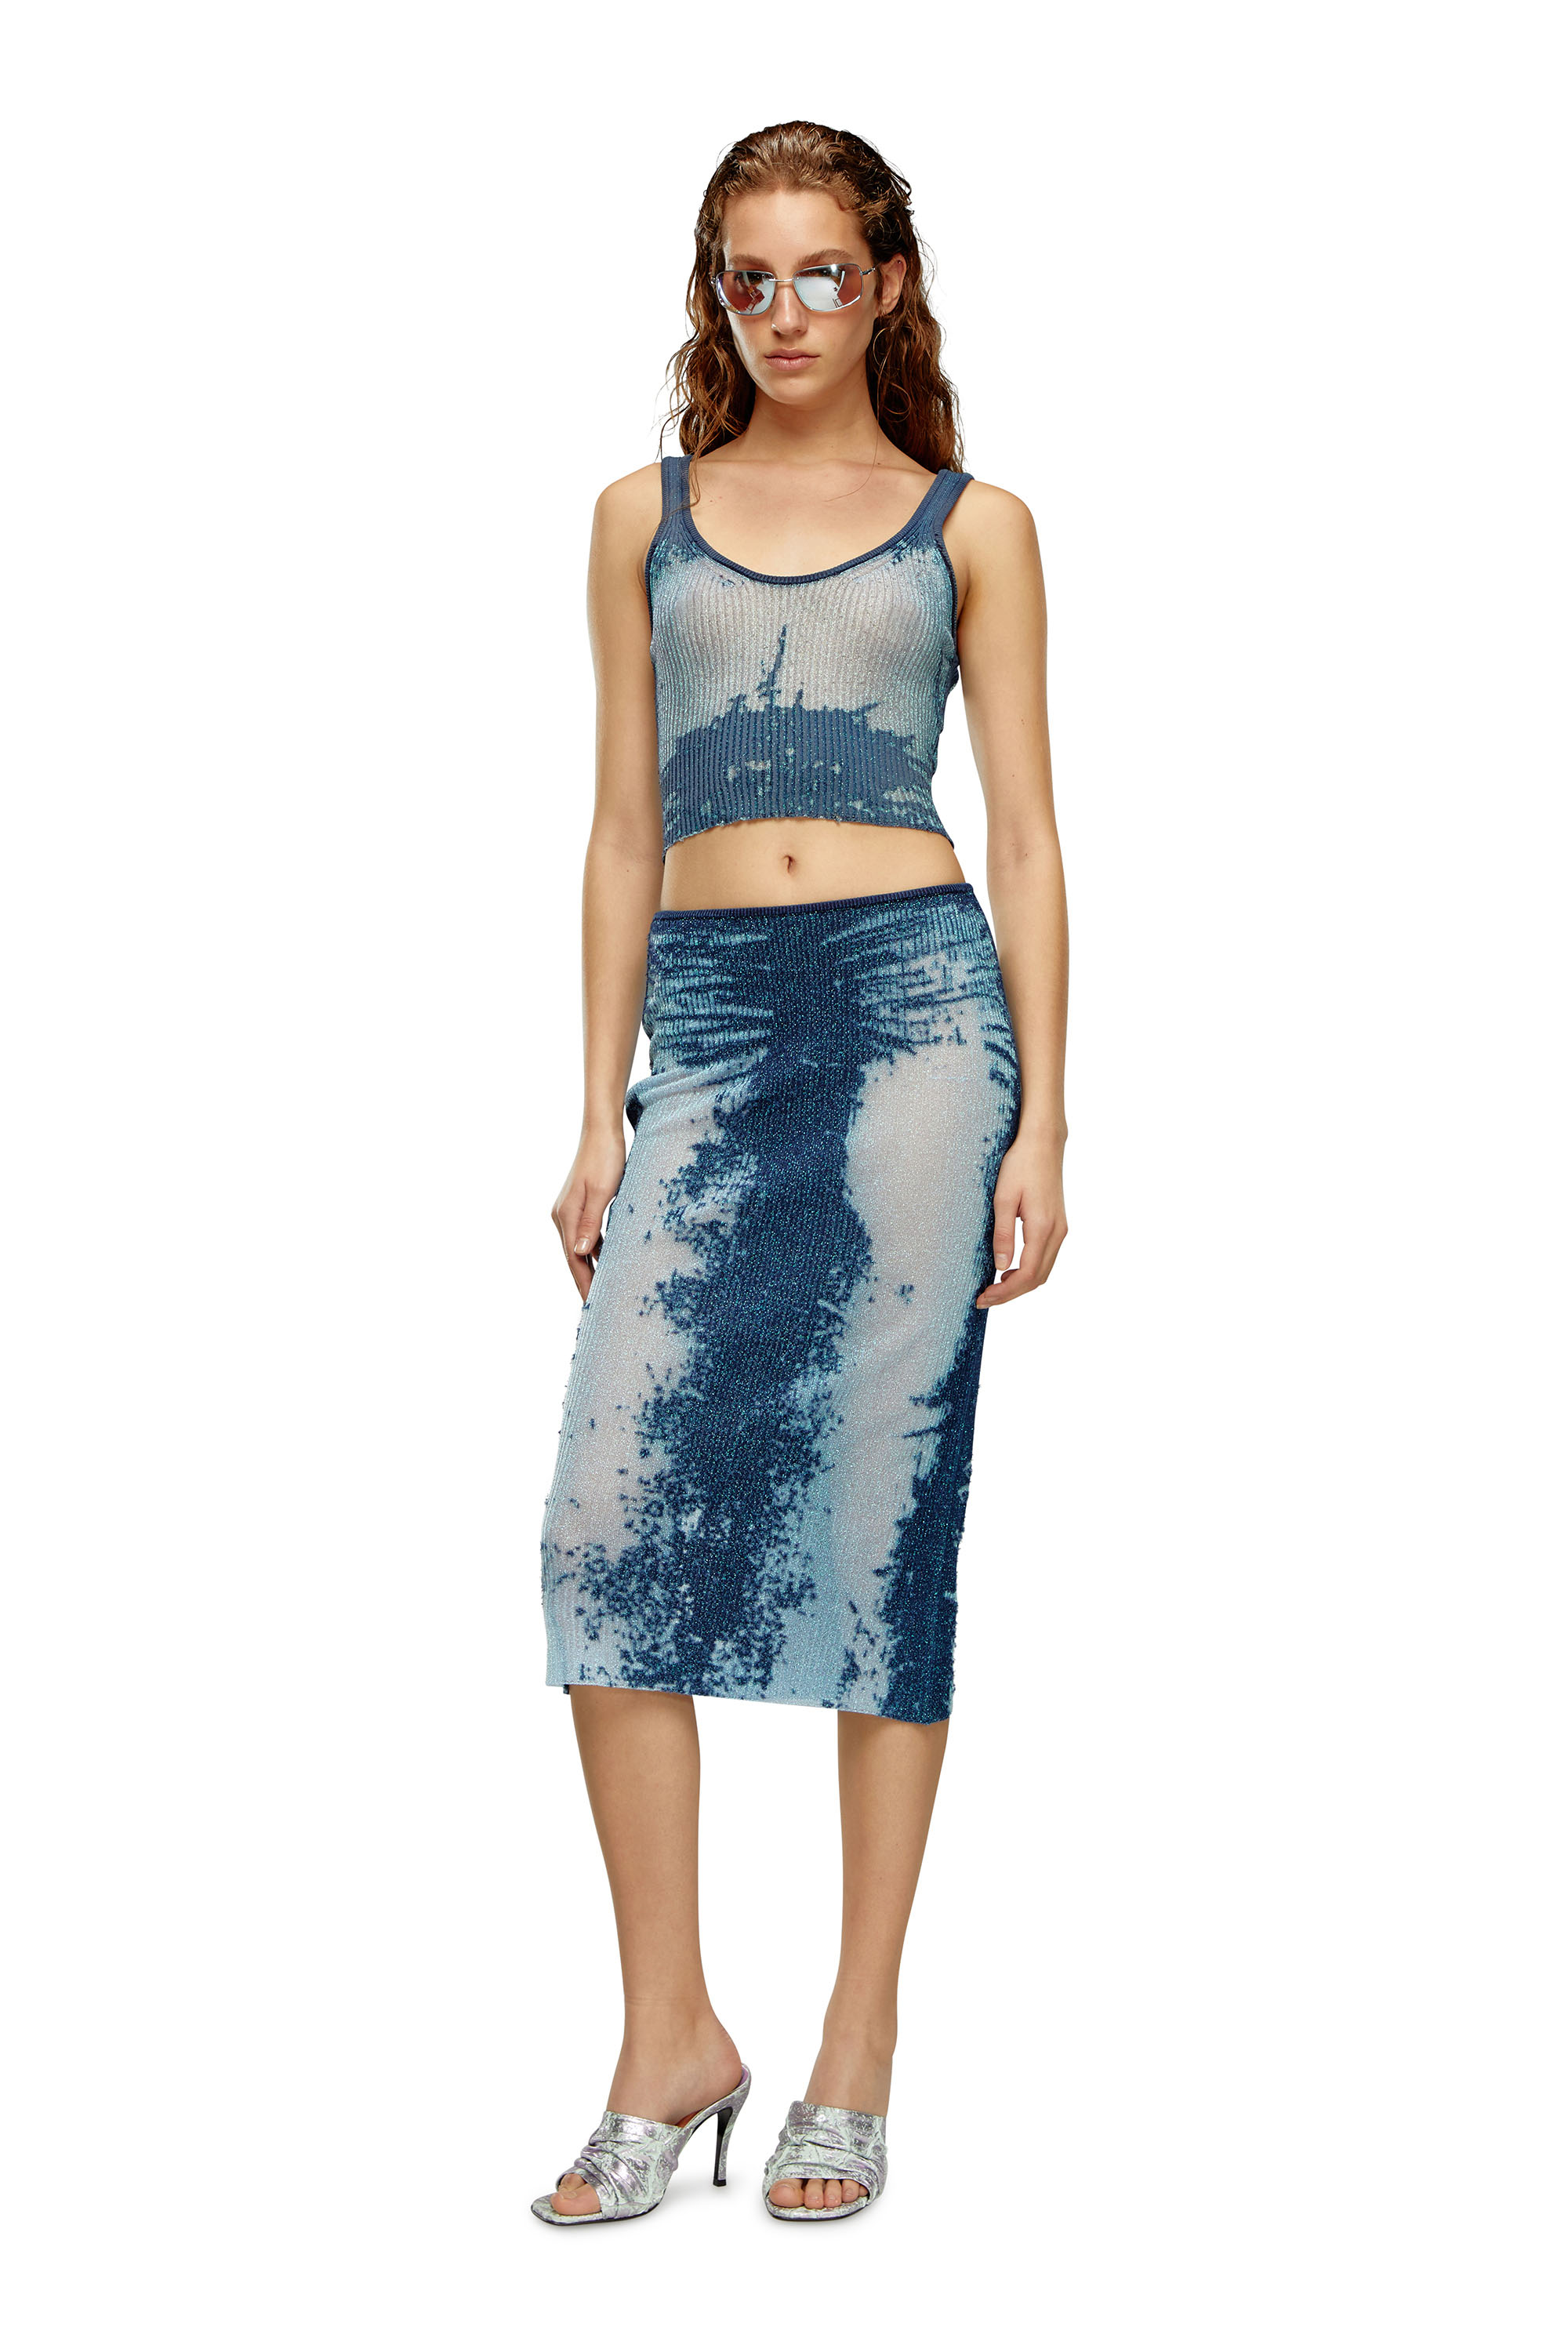 Diesel - M-BEGONIA, Woman Midi skirt in devoré metallic knit in Blue - Image 2